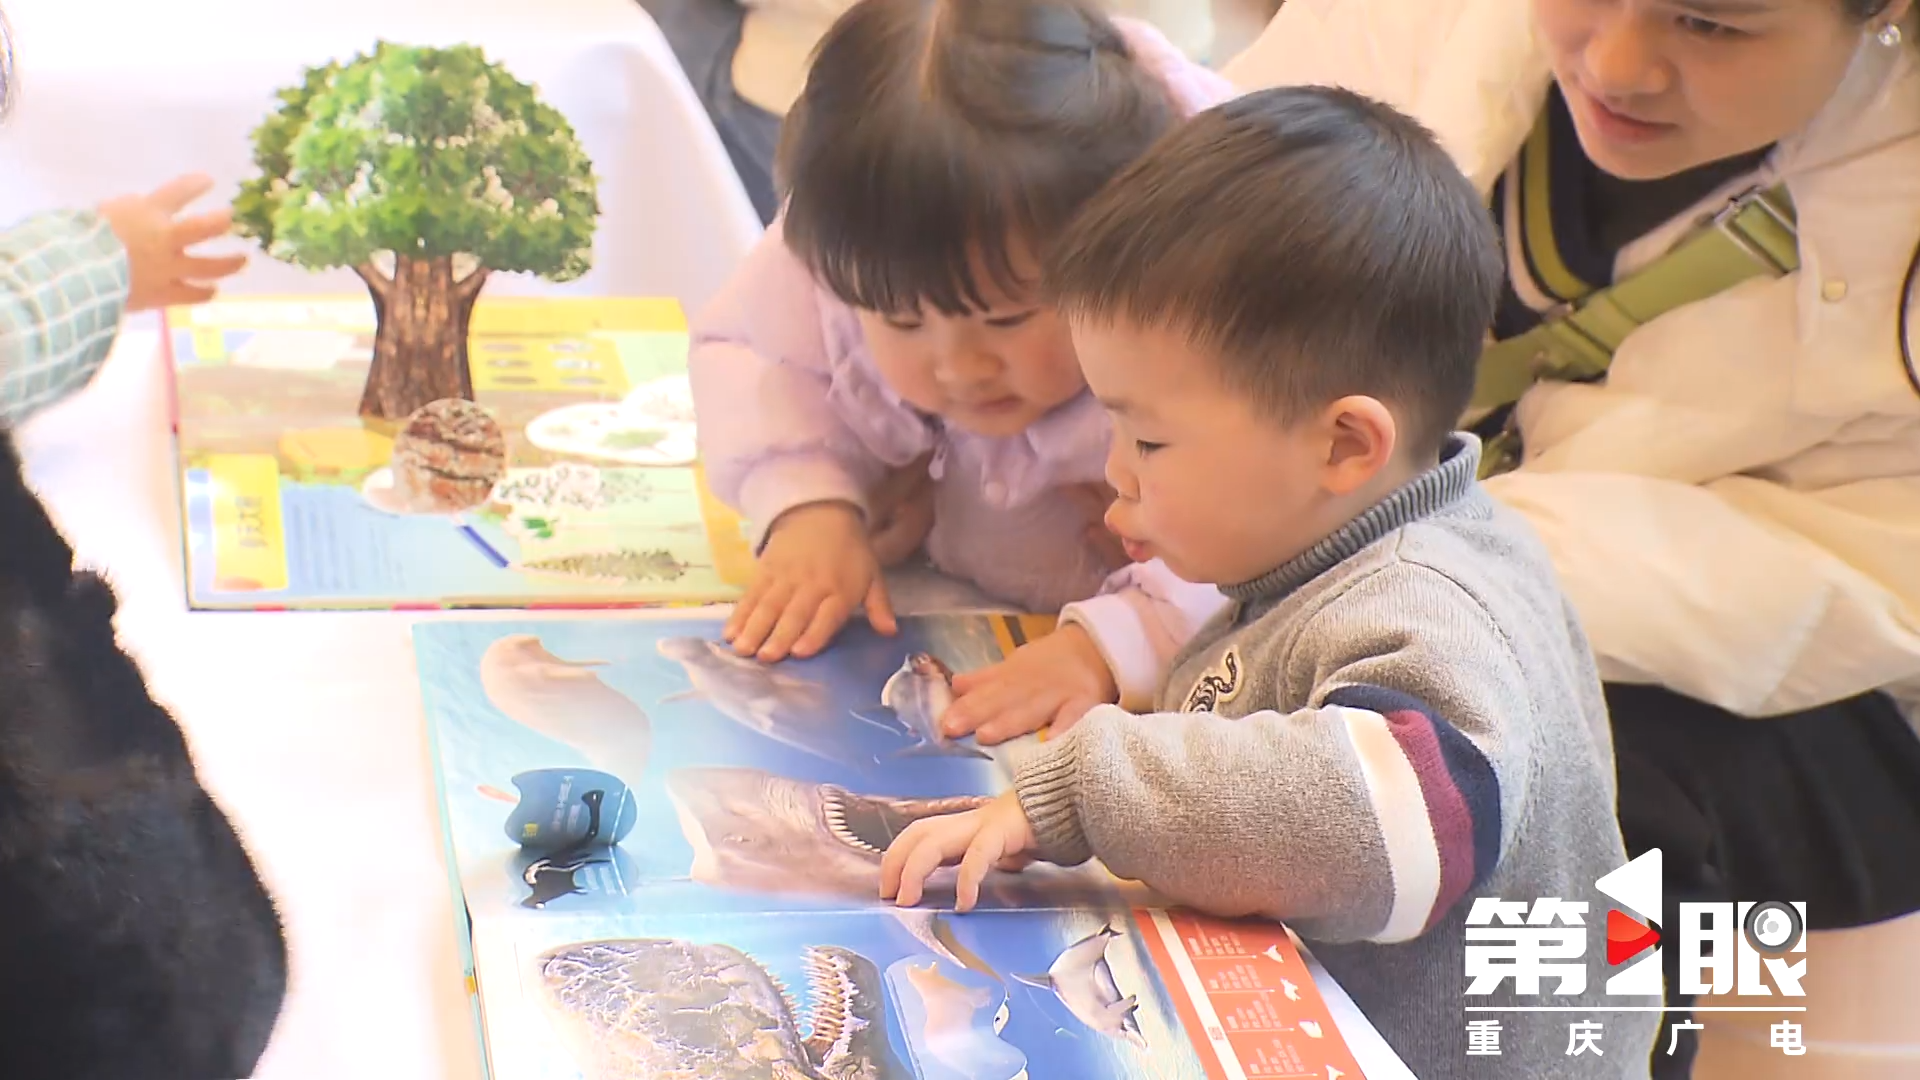 点亮患儿心灯 重庆市首家医院儿童书屋投用3